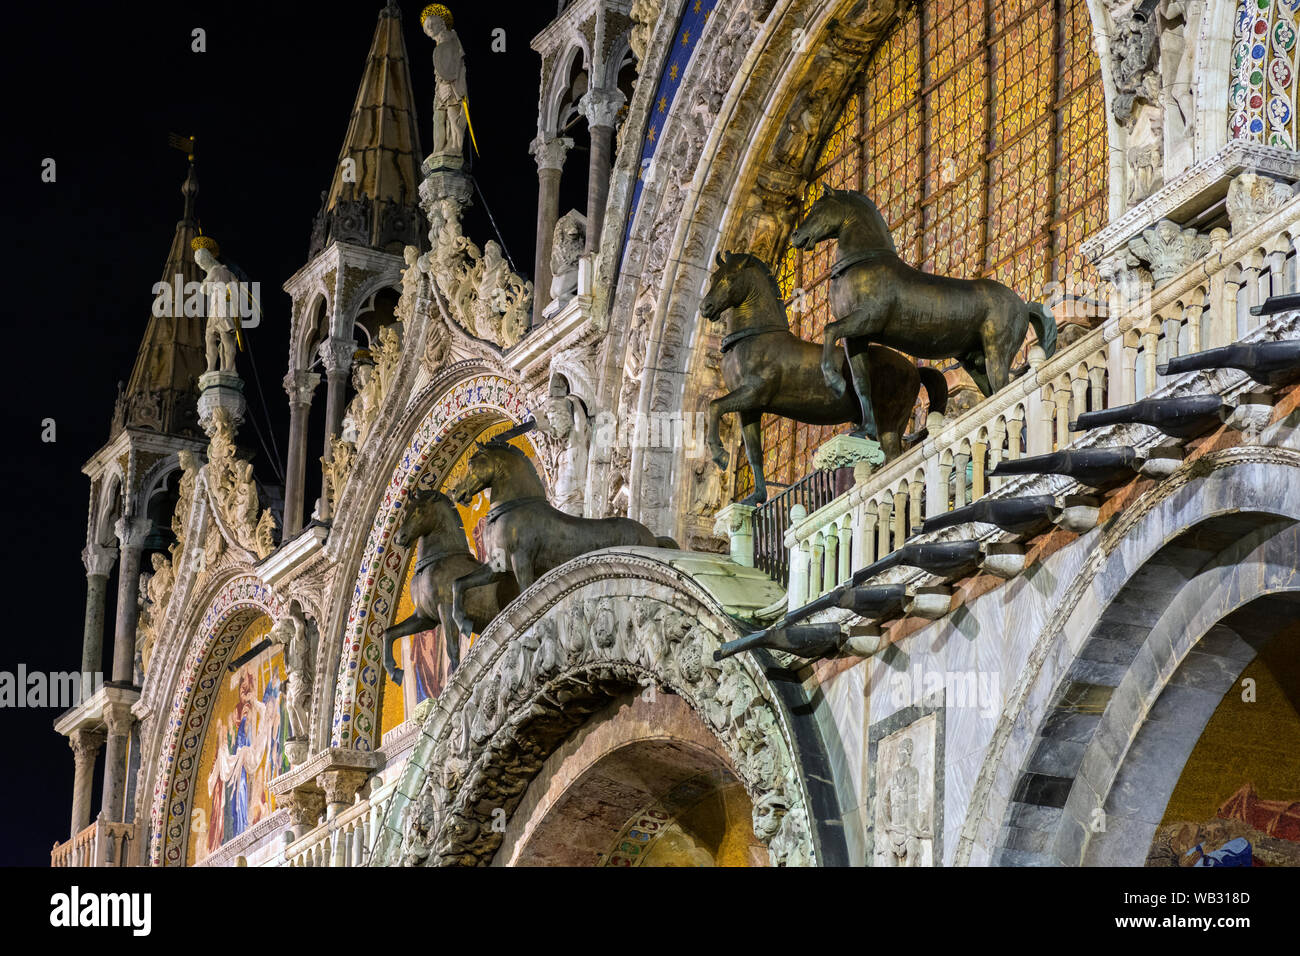 La réplica cuatro caballos de San Marcos en el oeste de la fachada de la Basílica di San Marco (Basílica de San Marcos) por la noche, la Plaza de San Marcos, en Venecia, Italia Foto de stock